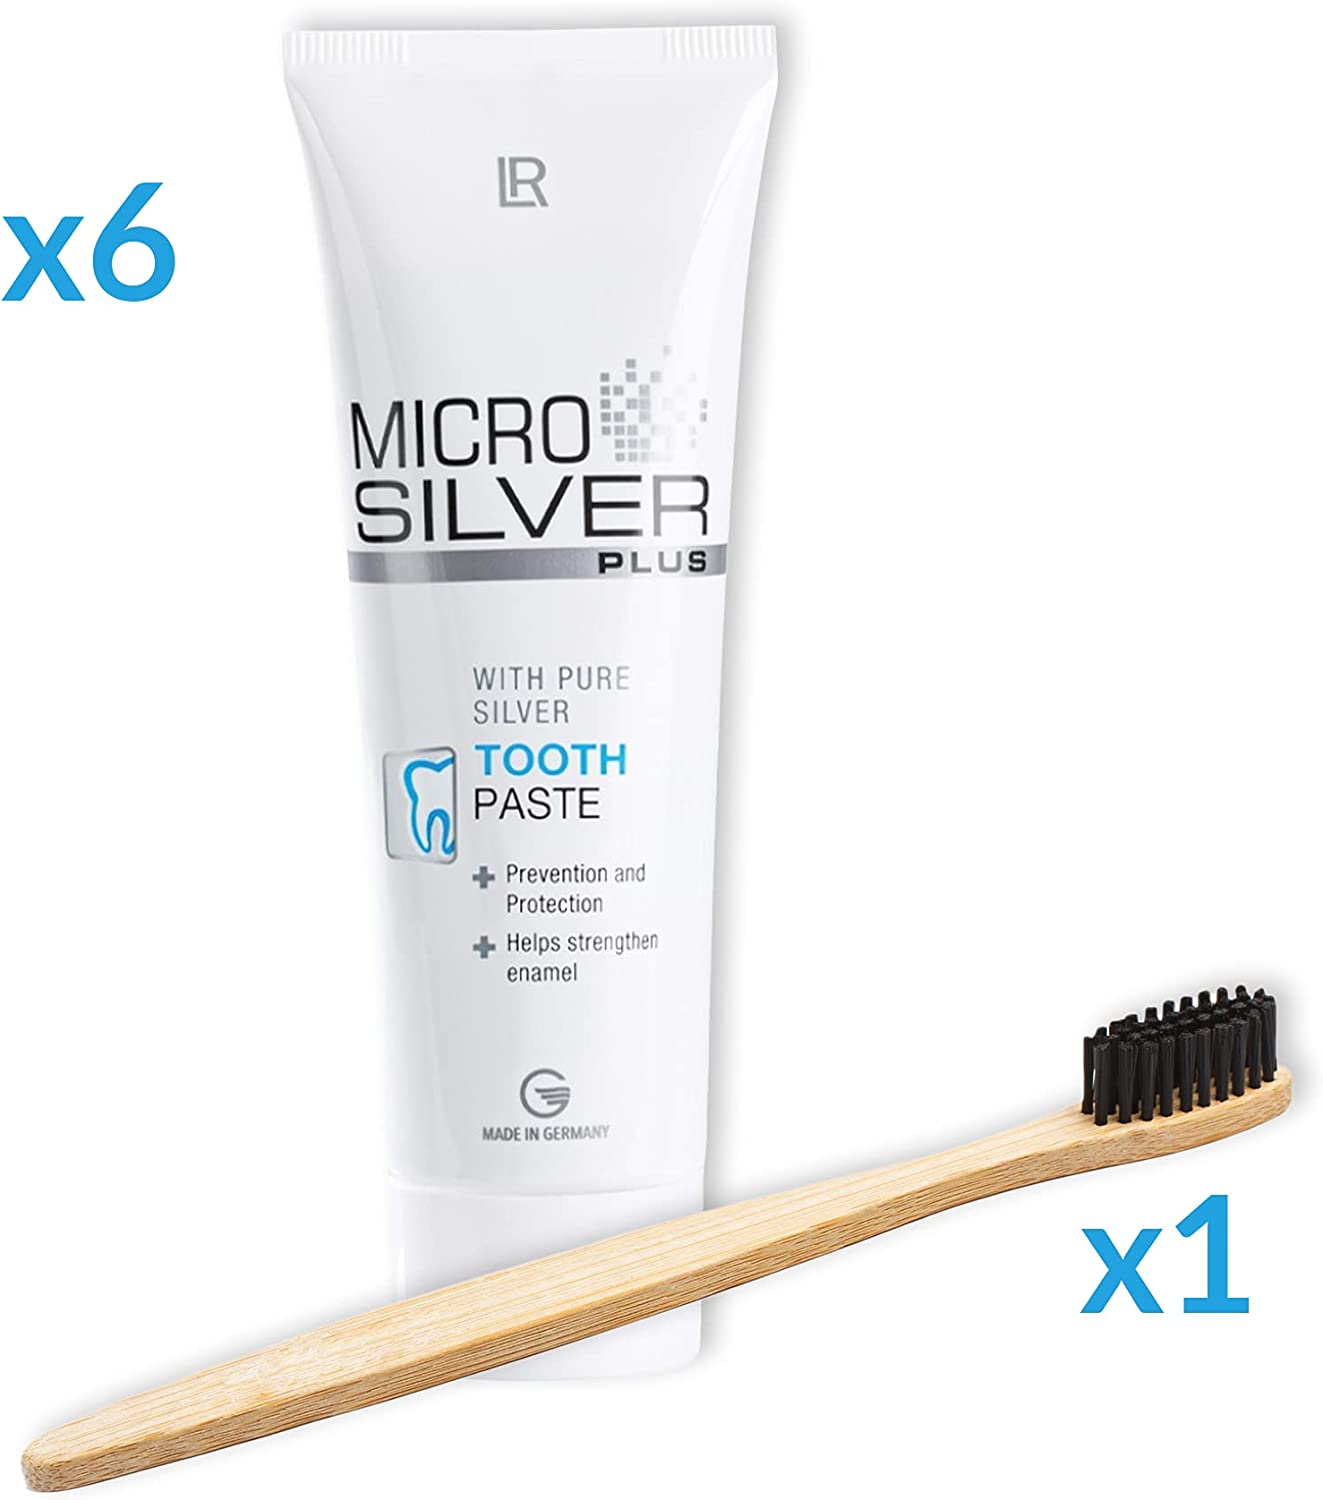 Genussleben Zahnpflege Set aus 1x Zahnbürste aus Bambus und 6x LR MicroSilver Zahnpasta - Genussleben